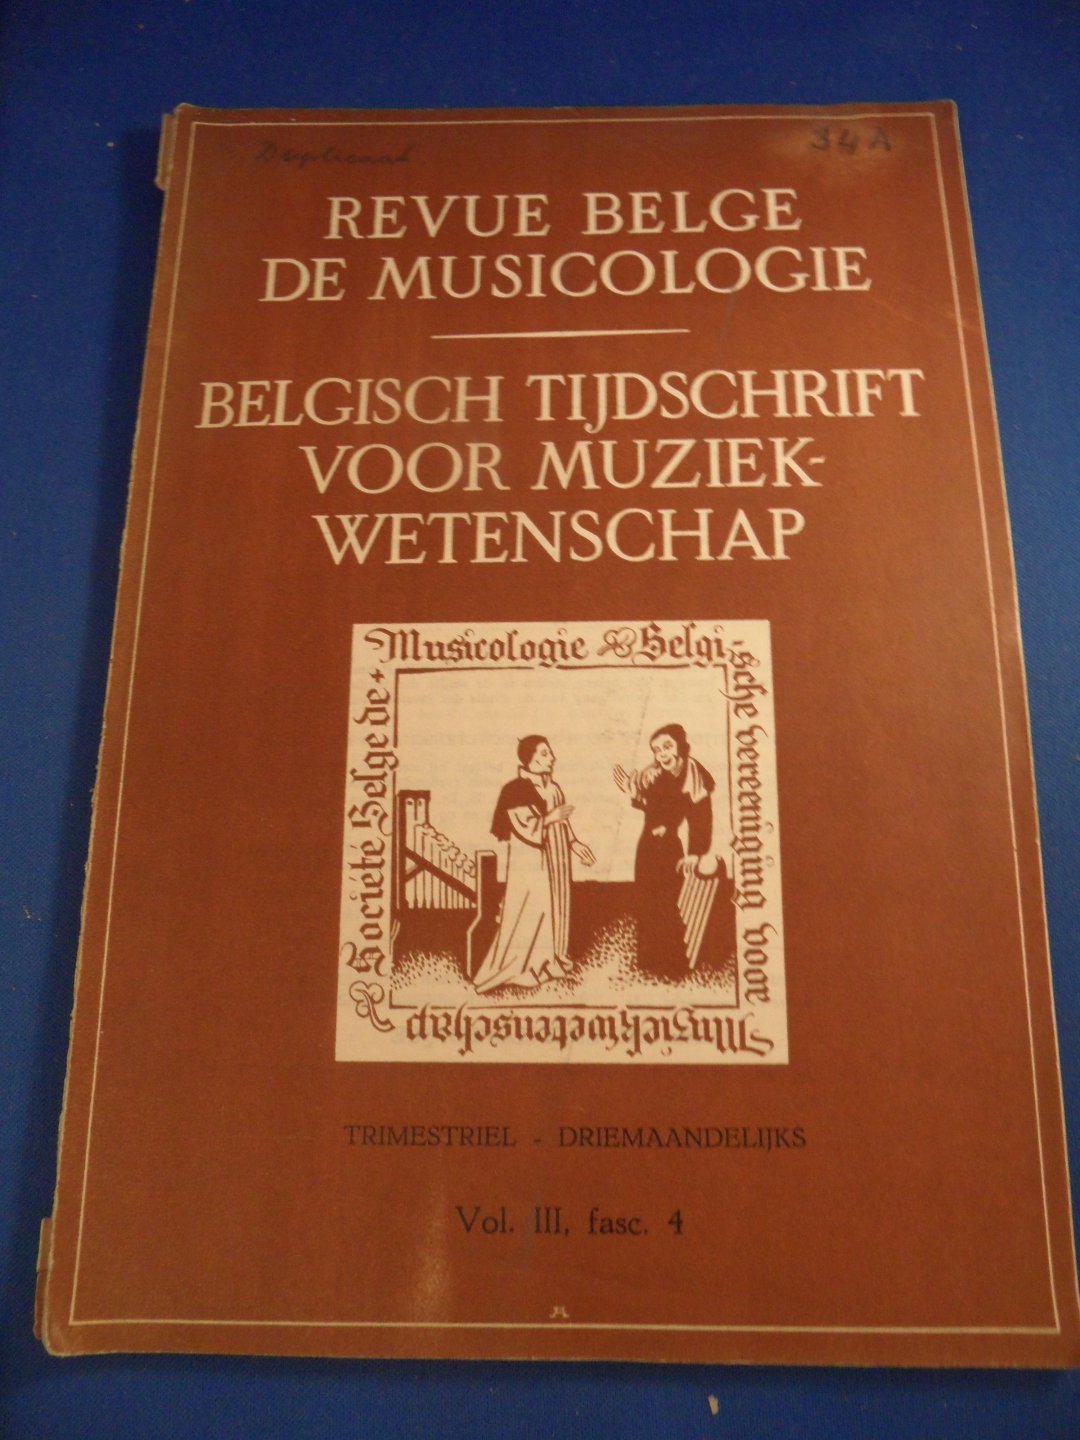 Revue Belge de musicologie - Revue Belge de musicologie. Belgisch tijdschrift voor muziekwetenschap, Vol. III fasc. 4